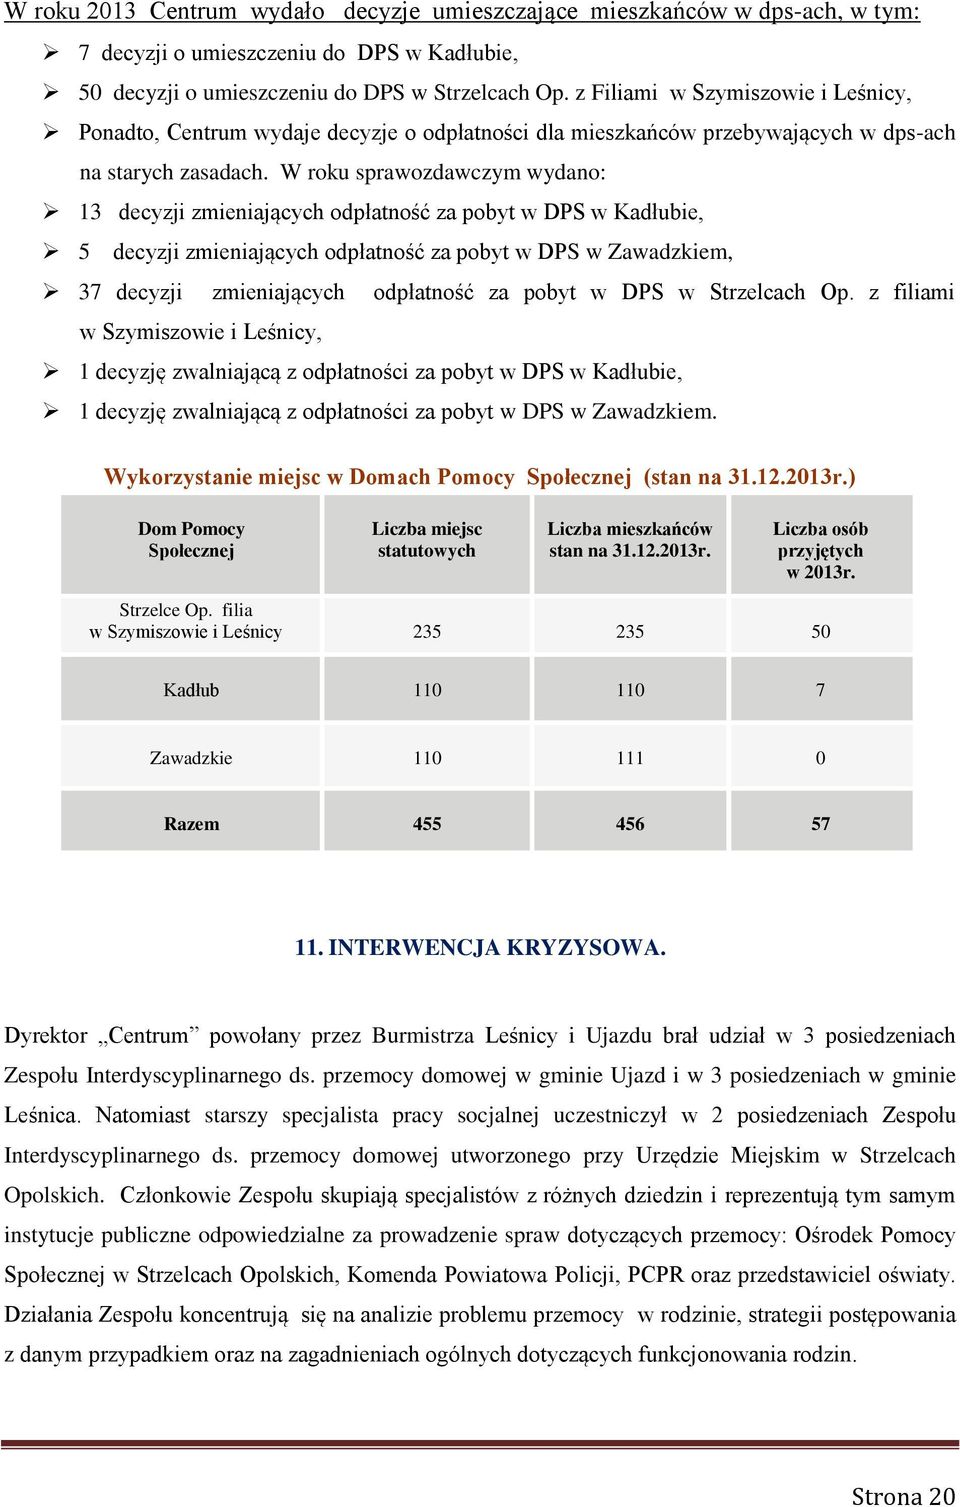 W roku sprawozdawczym wydano: 13 decyzji zmieniających odpłatność za pobyt w DPS w Kadłubie, 5 decyzji zmieniających odpłatność za pobyt w DPS w Zawadzkiem, 37 decyzji zmieniających odpłatność za